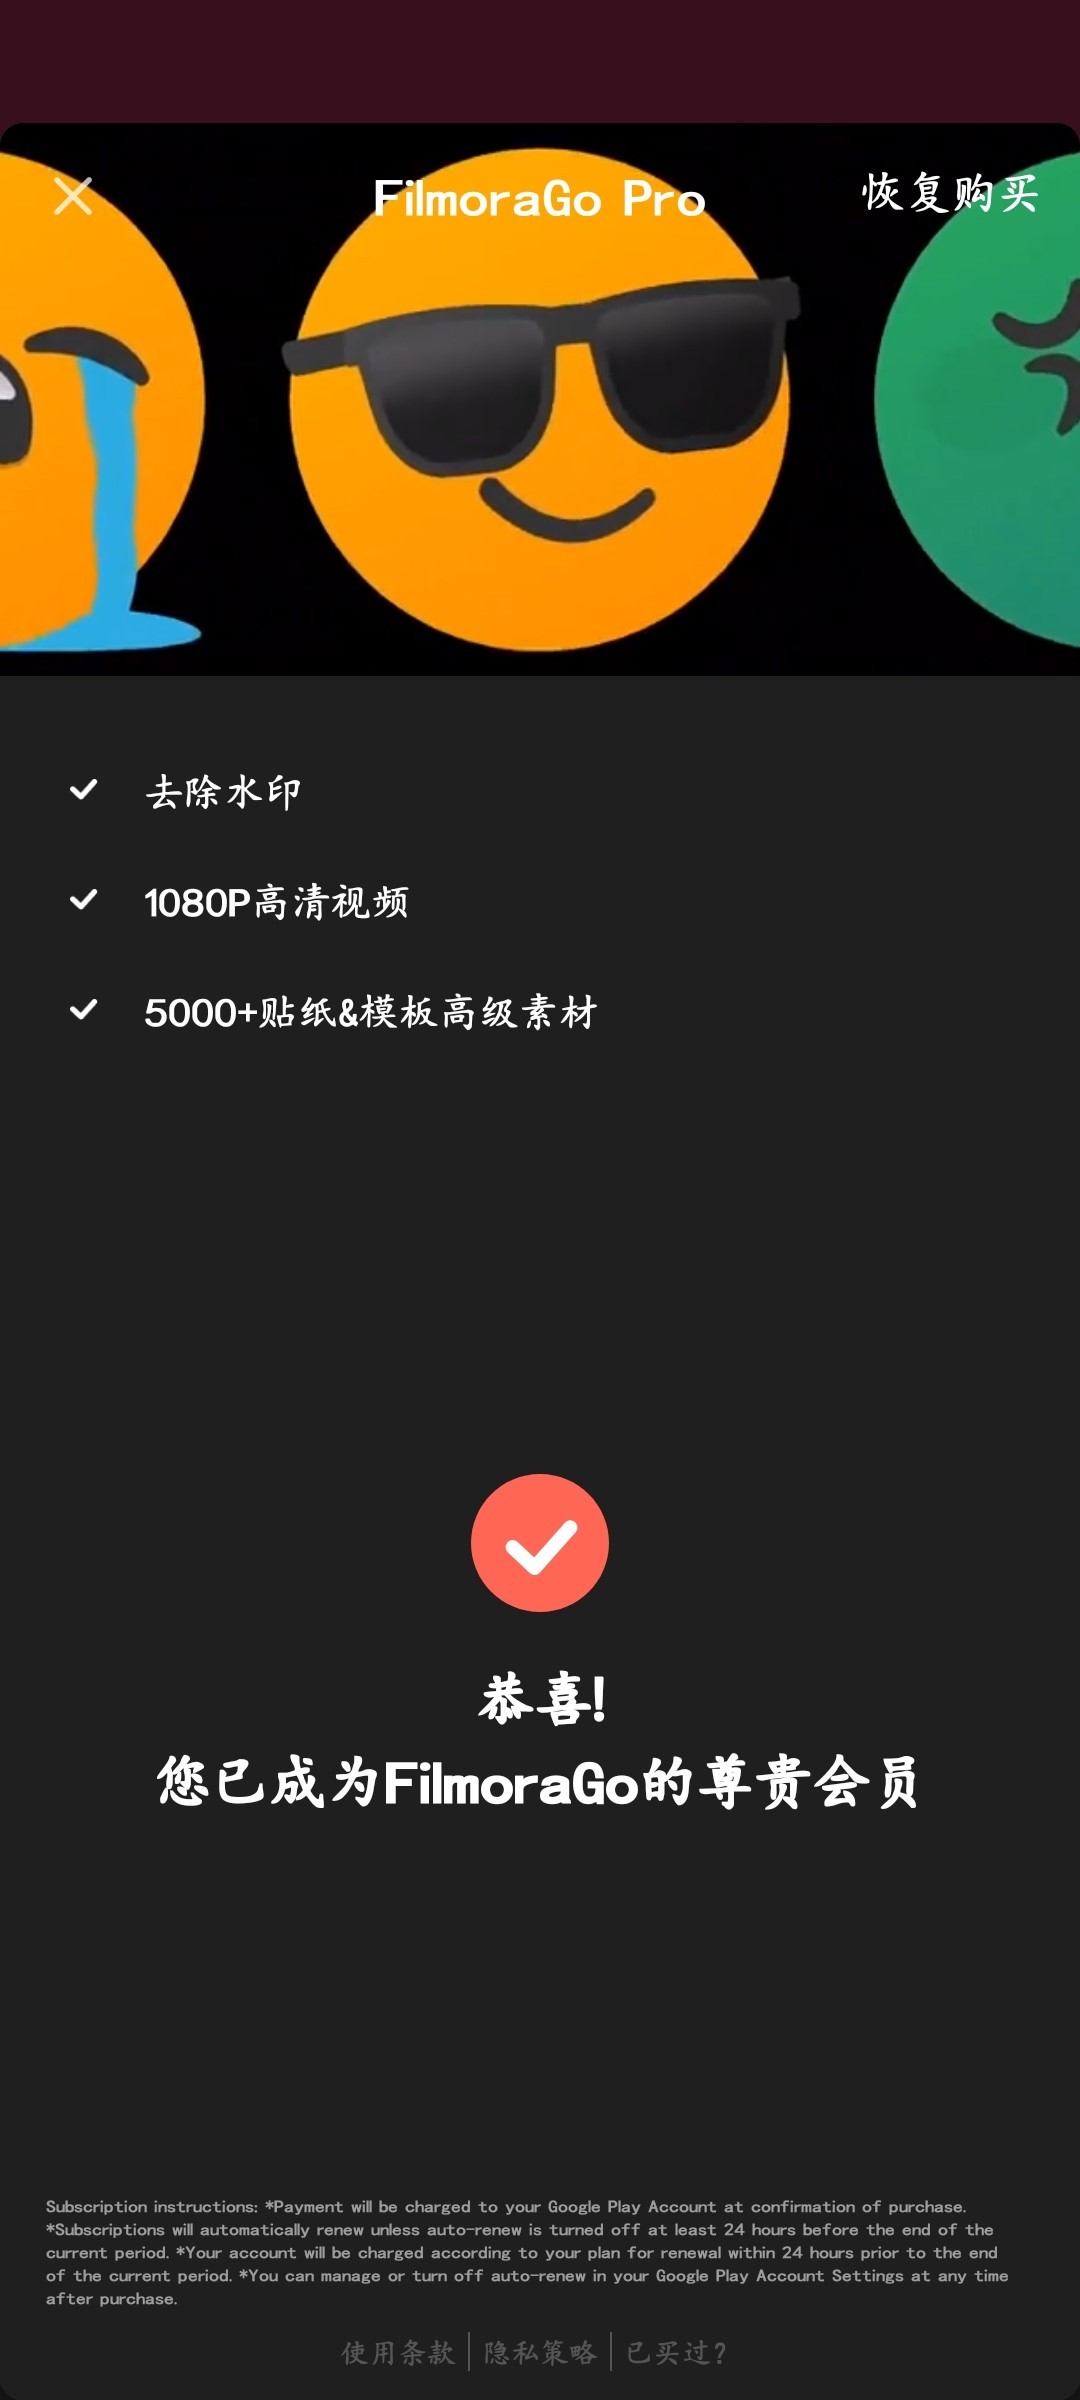 安卓视频编辑器 FilmoraGo for Android v6.3.8 中文解锁专业版